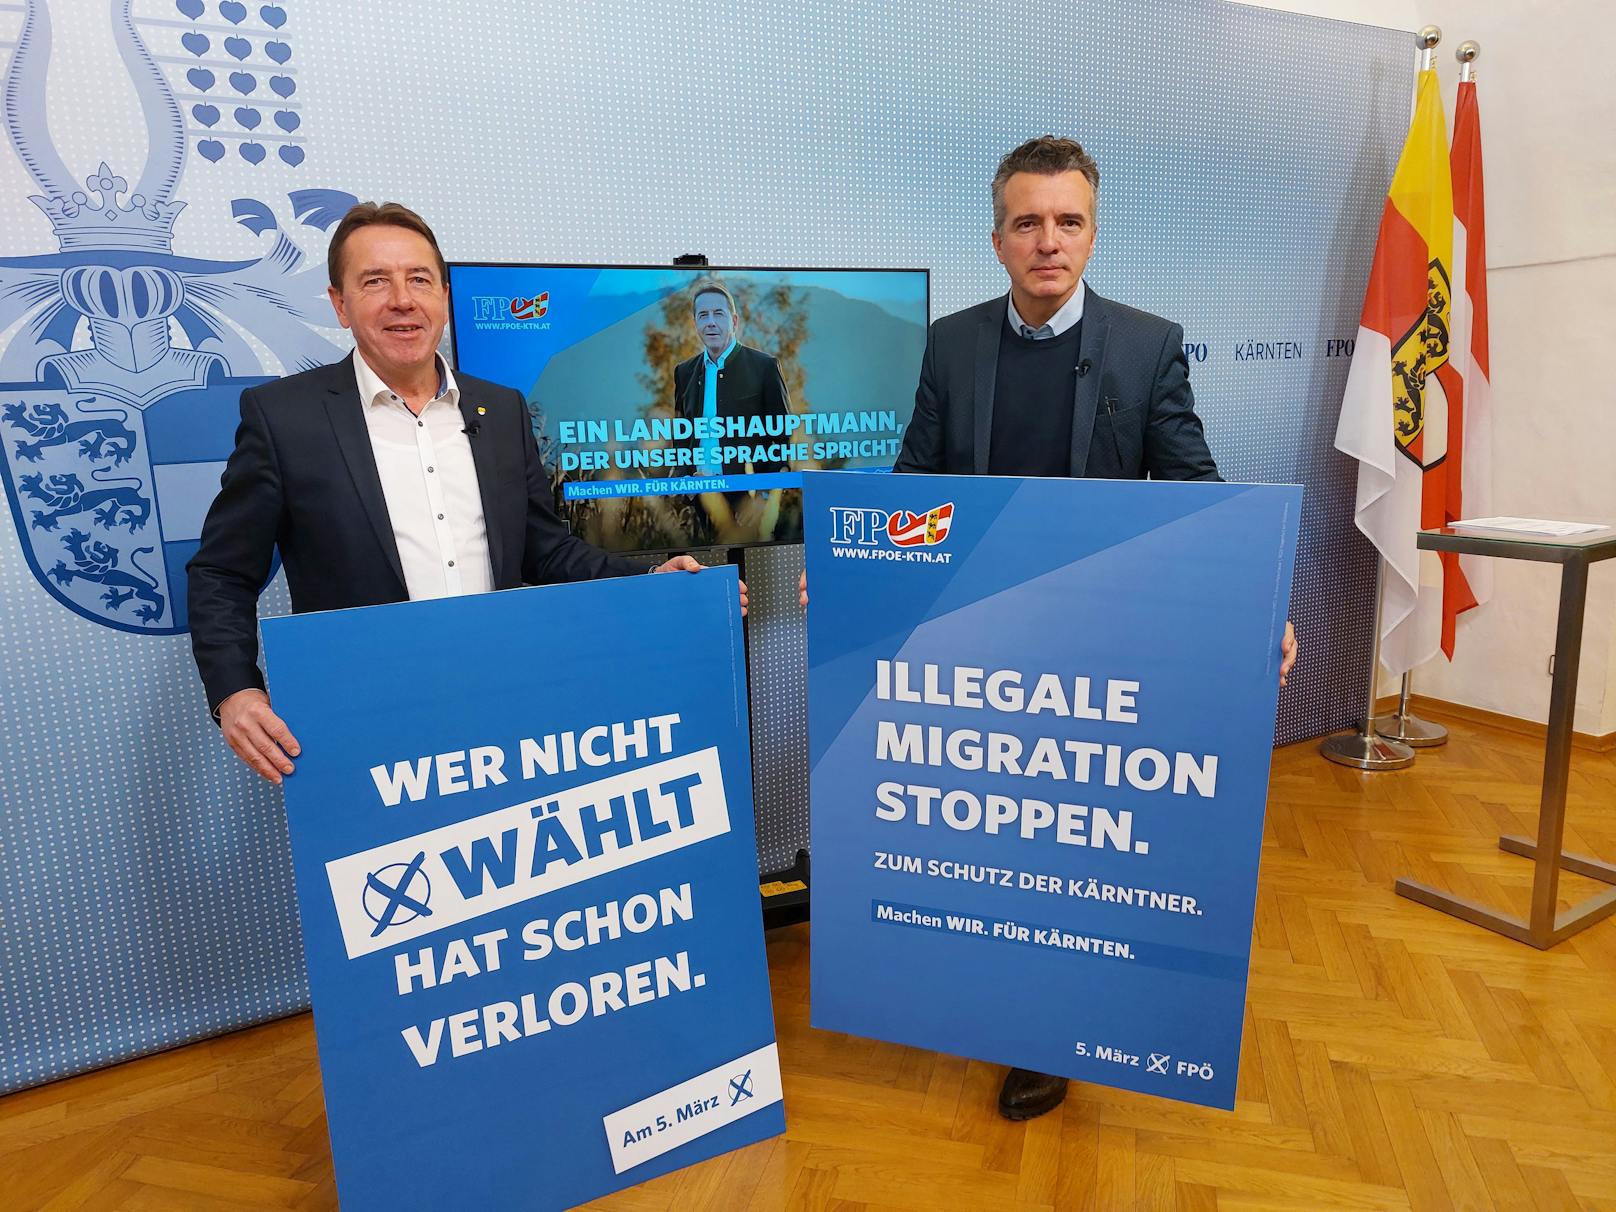 Kärntens FPÖ-Chef Erwin Angerer (links) meinte, mit Postings müsse man in Zukunft vorsichtiger sein.